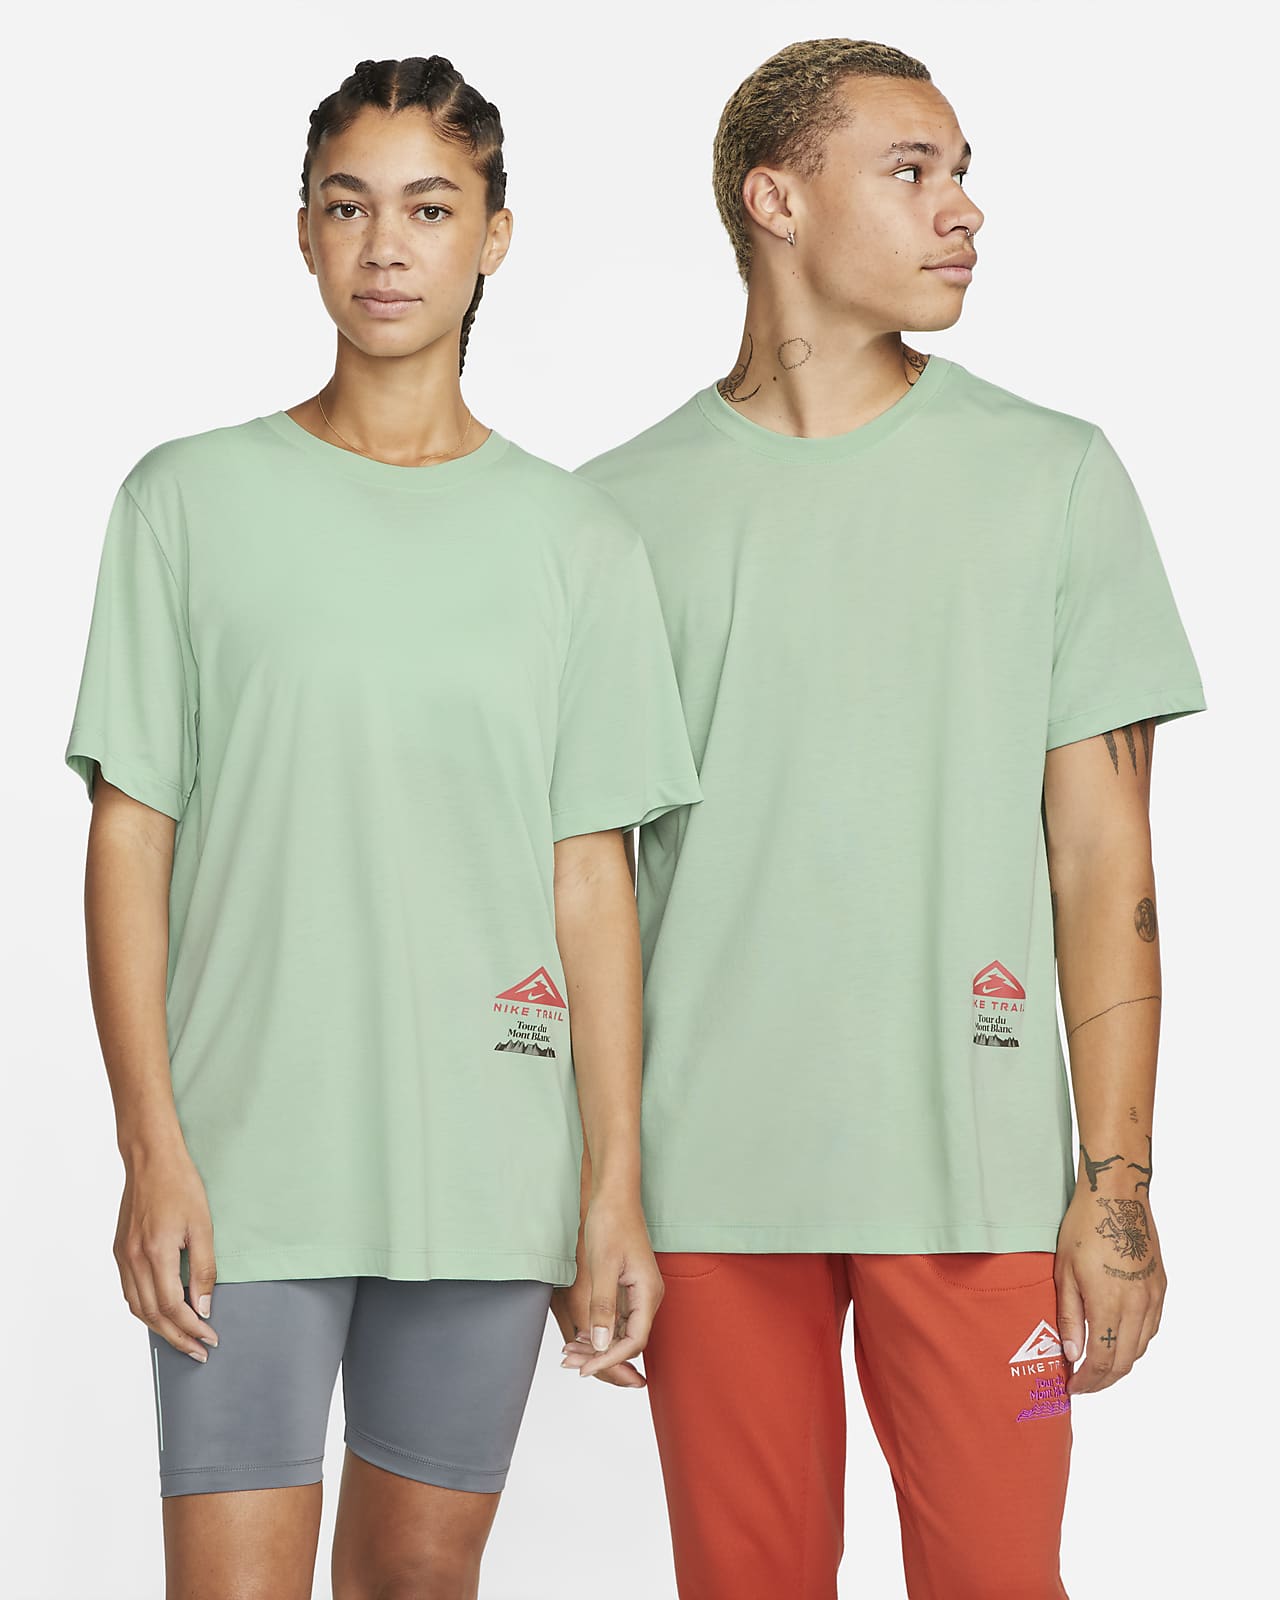 Nike Dri-FIT Trail T-Shirt